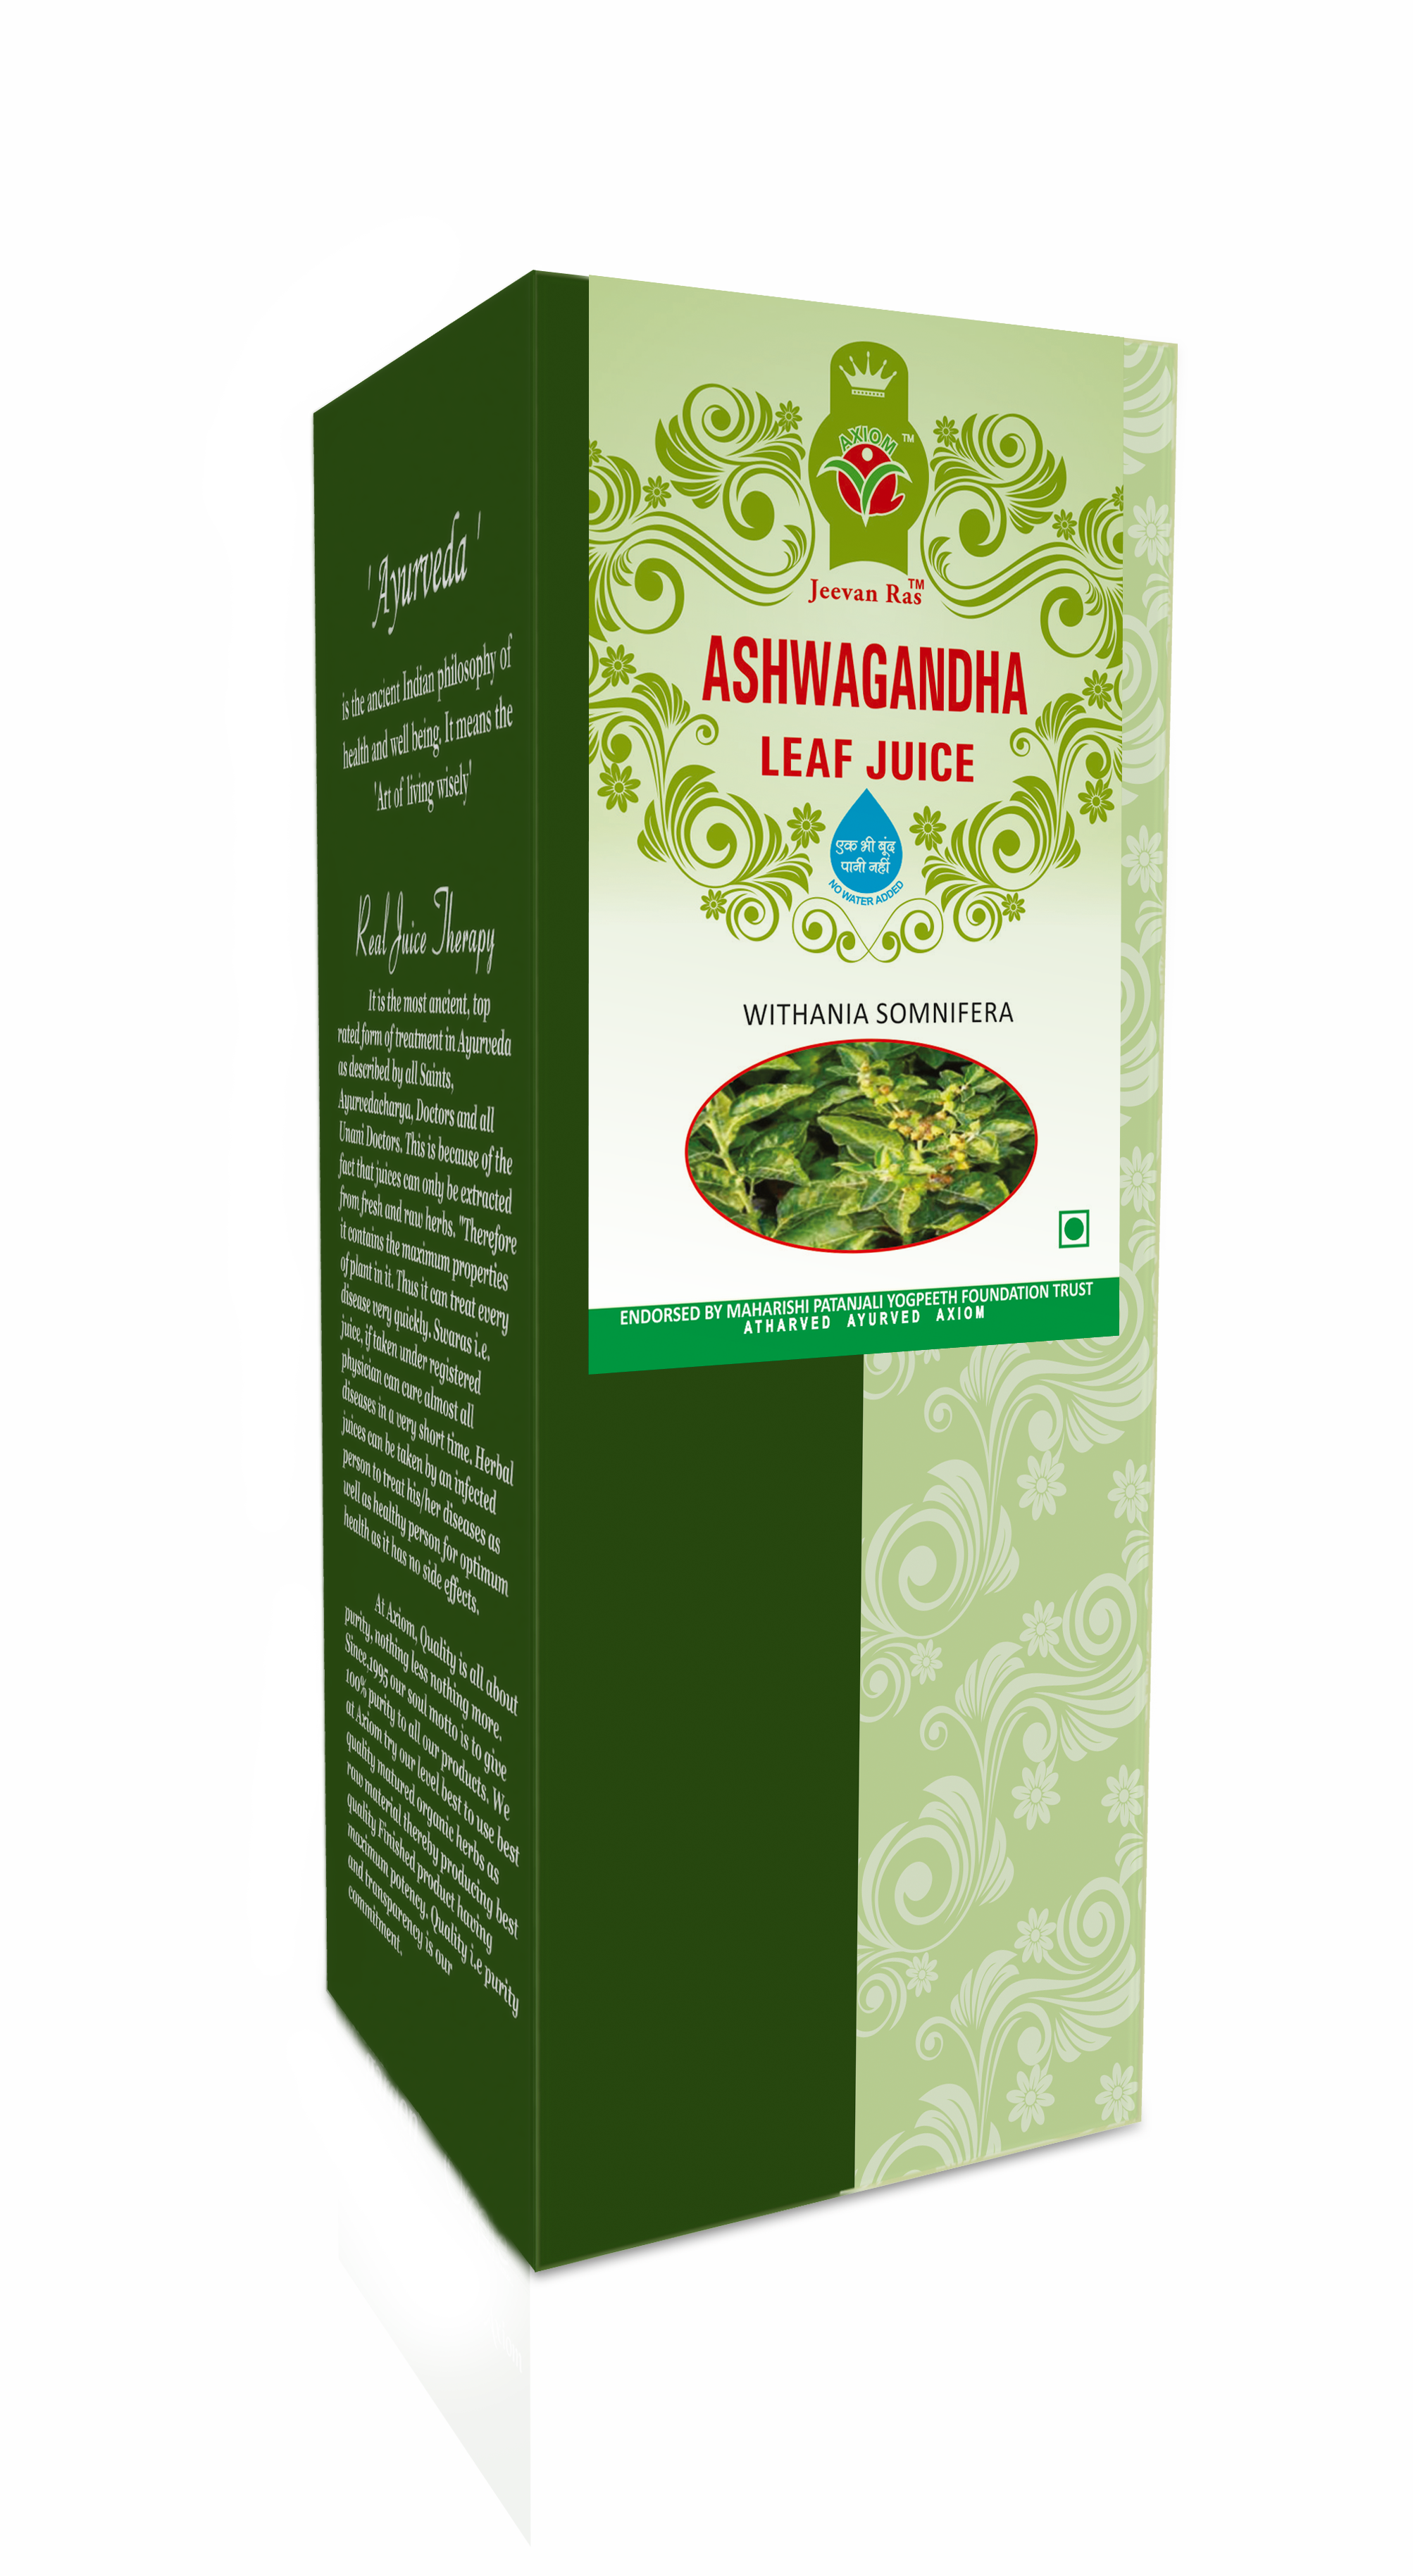 Buy Axiom Ashavgandha Leaf Juice at Best Price Online